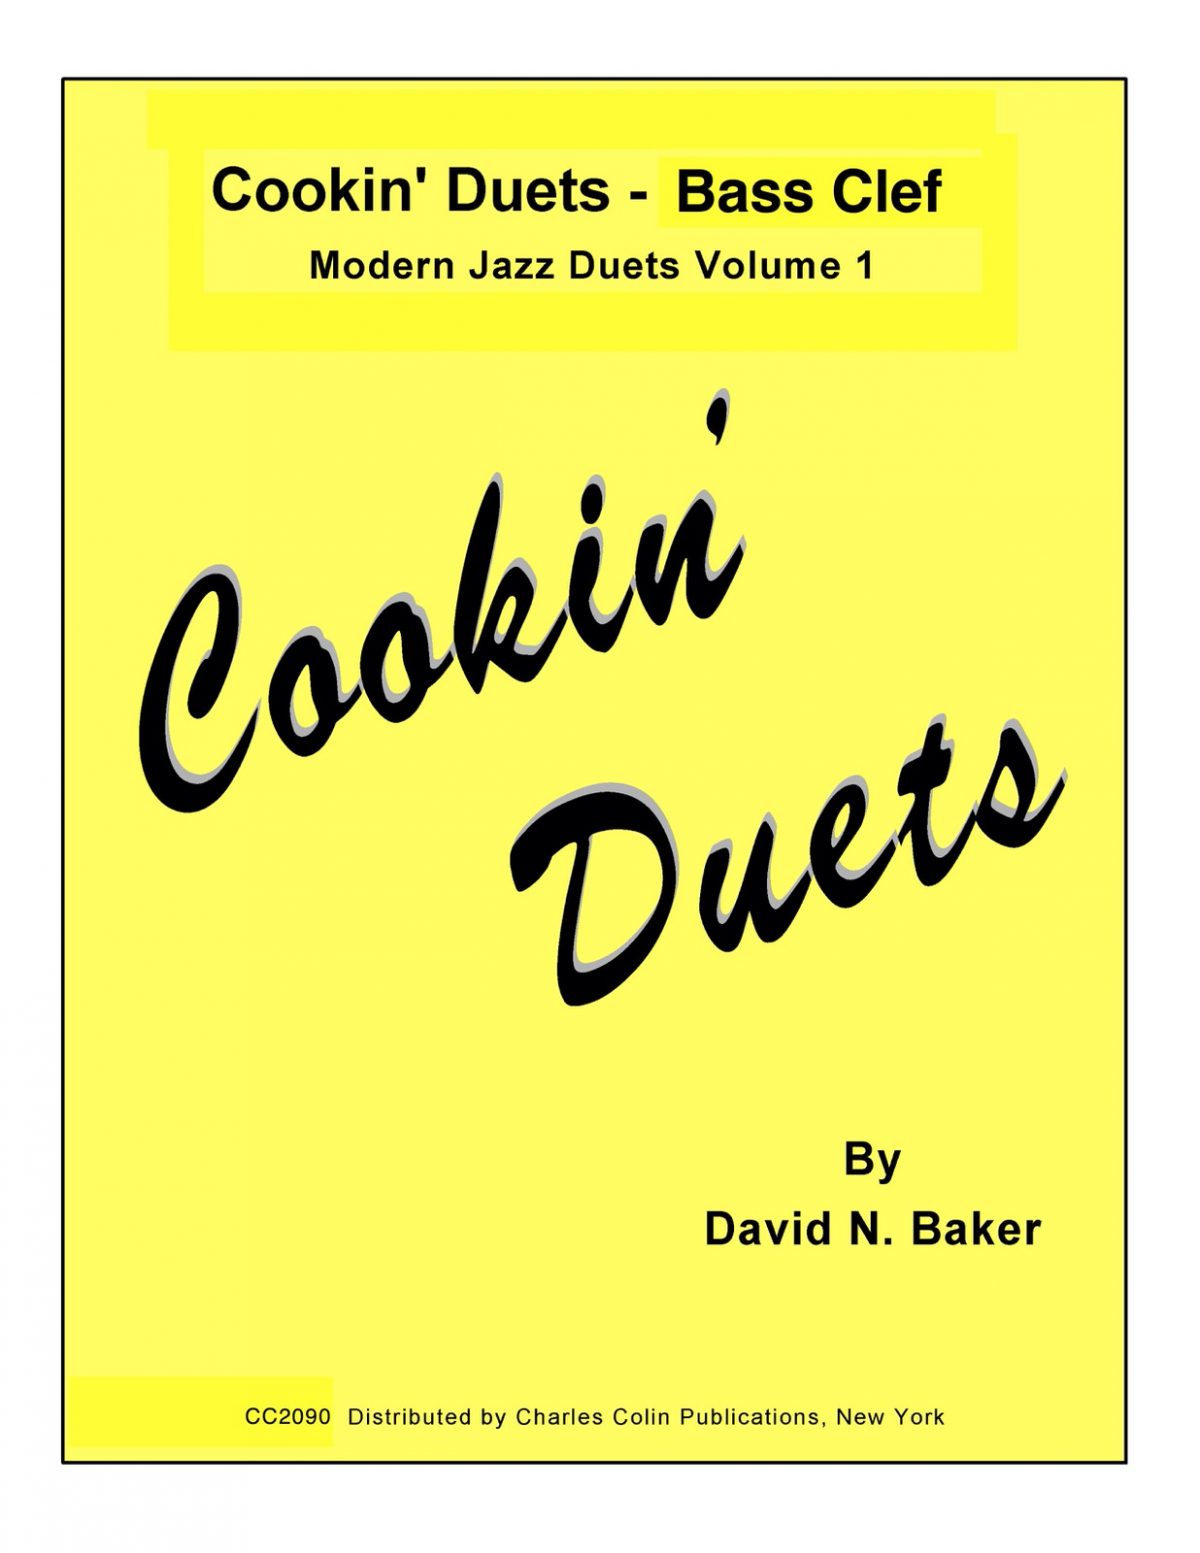 Baker, Cookin' Duets Bass Clef-p01